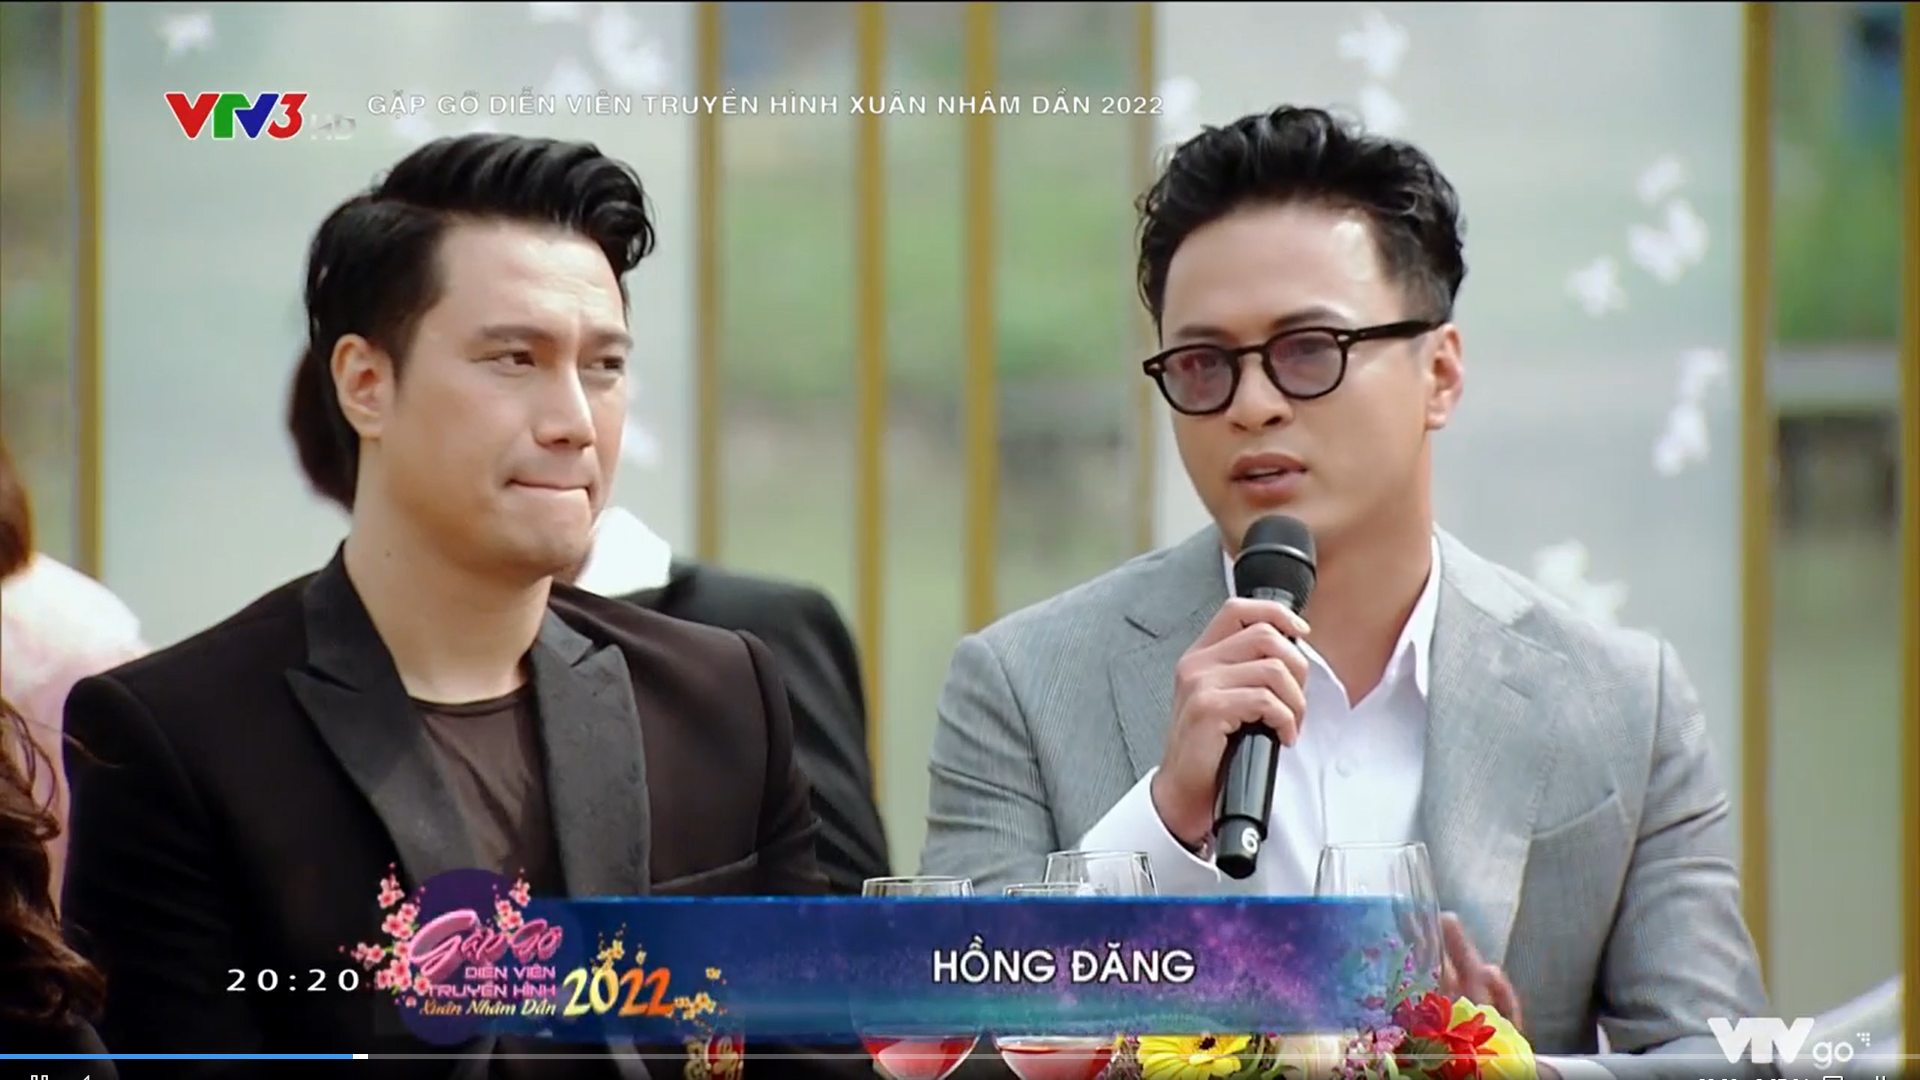 Gặp gỡ diễn viên truyền hình 2022: Dàn diễn viên bật mí nguyên nhân giúp phim Việt tỏa sáng trong đại dịch - Ảnh 4.